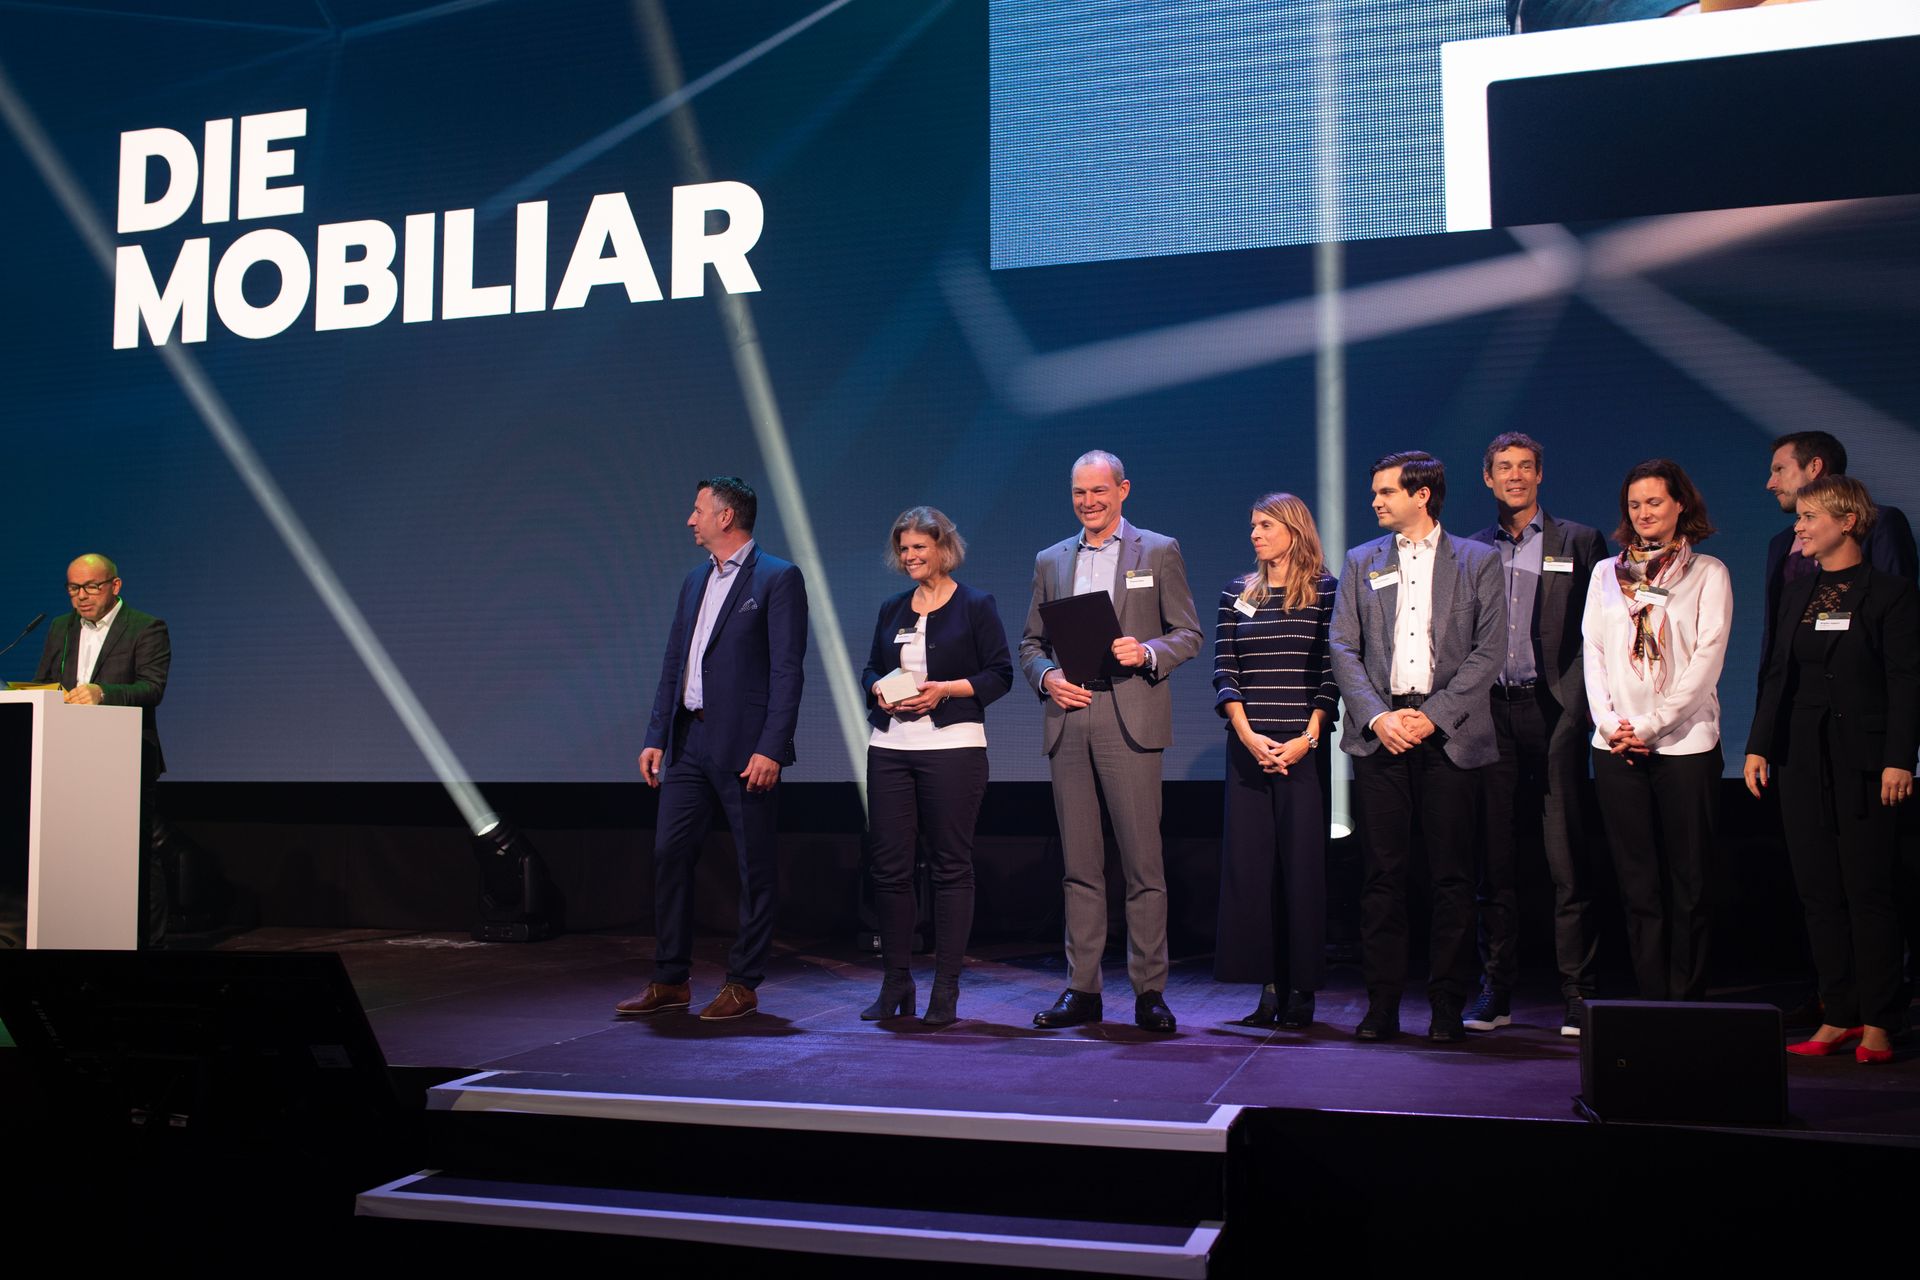 Het bedrijf "La Mobiliare" werd bekroond met de prijs "Digital Excellence PMI" bij de Zwitserse "Digital Economy Award"